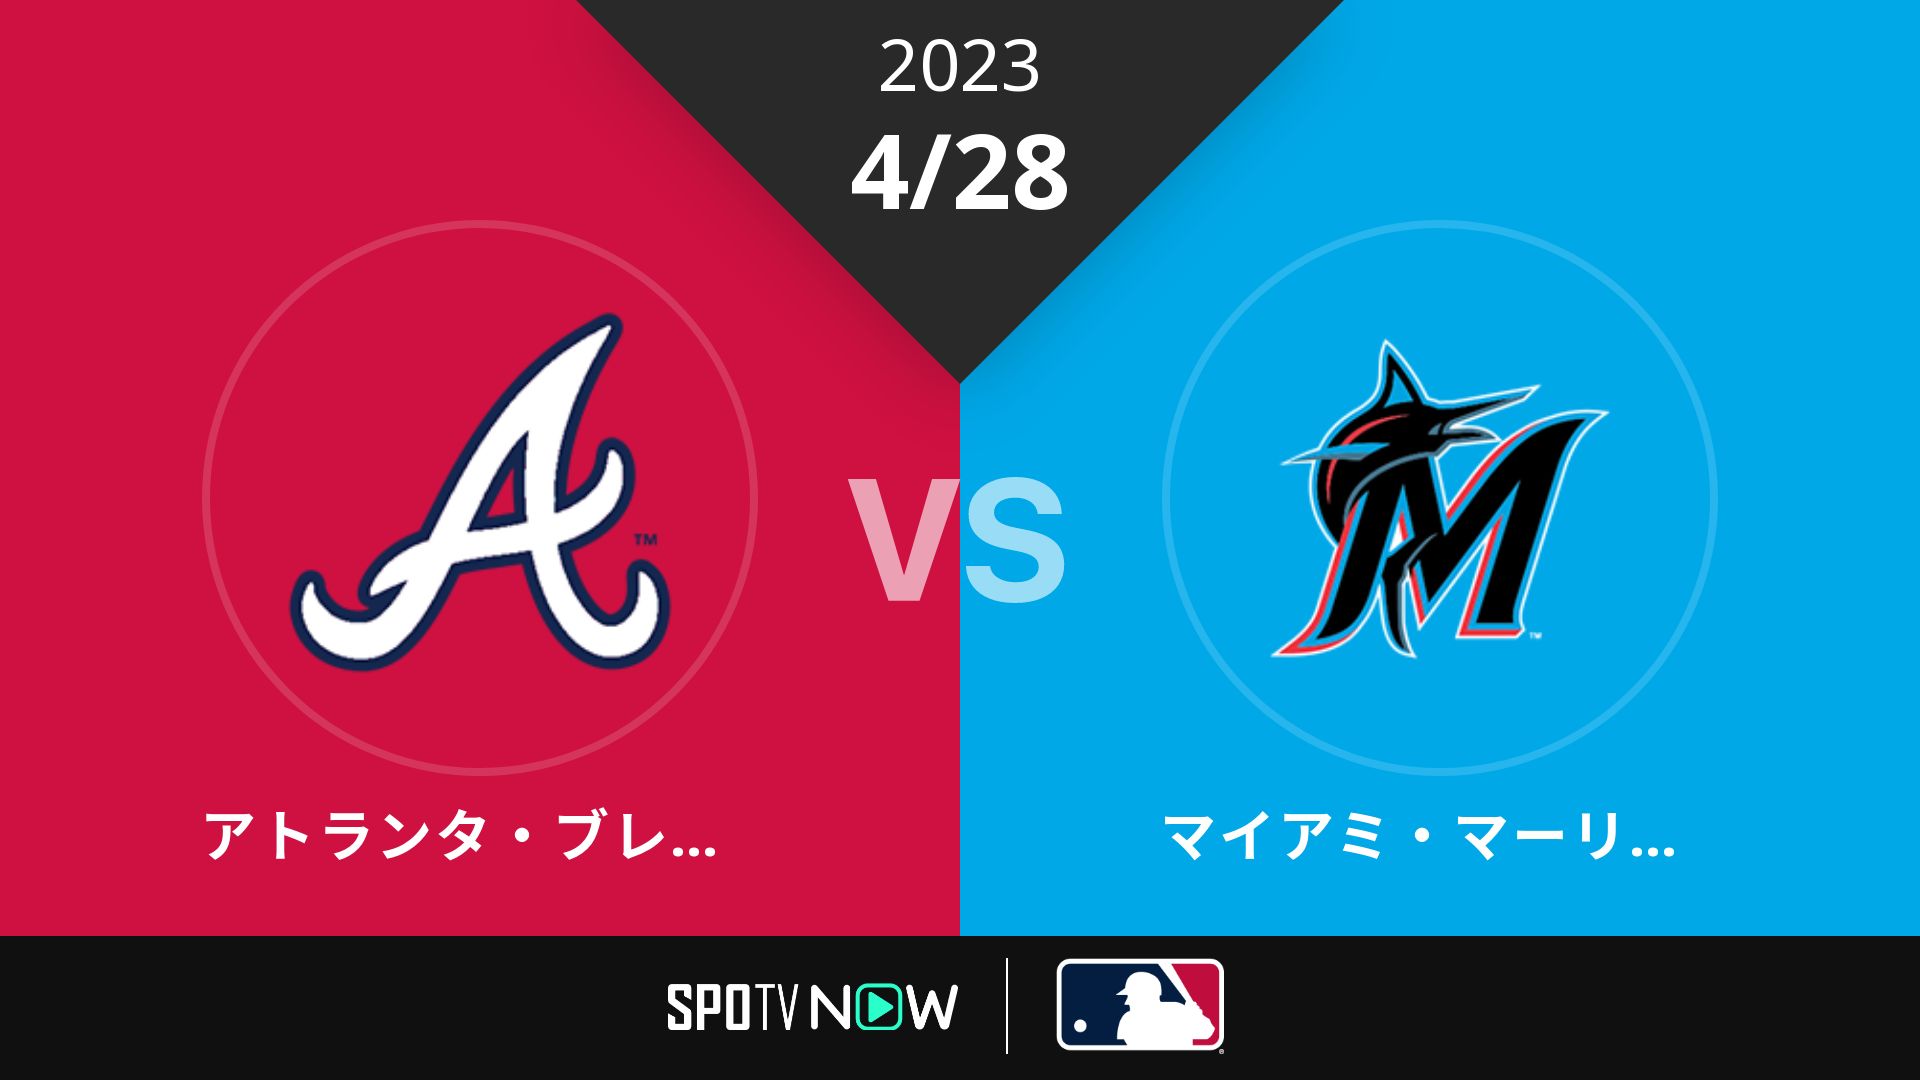 2023/4/28 ブレーブス vs マーリンズ [MLB]